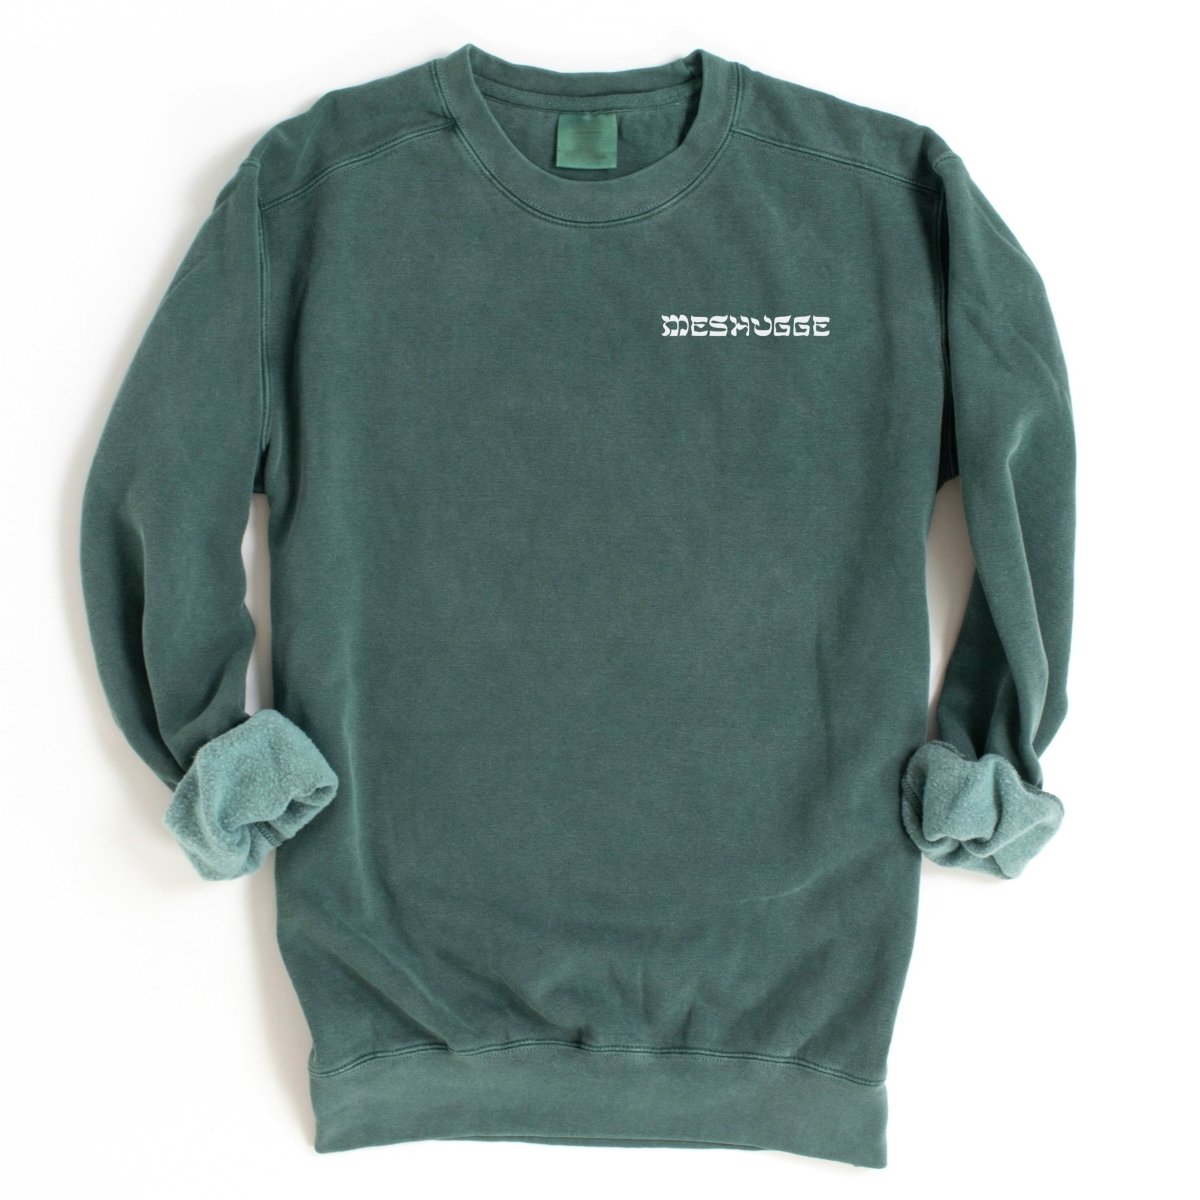 'Meshugge' Sweatshirt - Sweatshirts - Meshugge